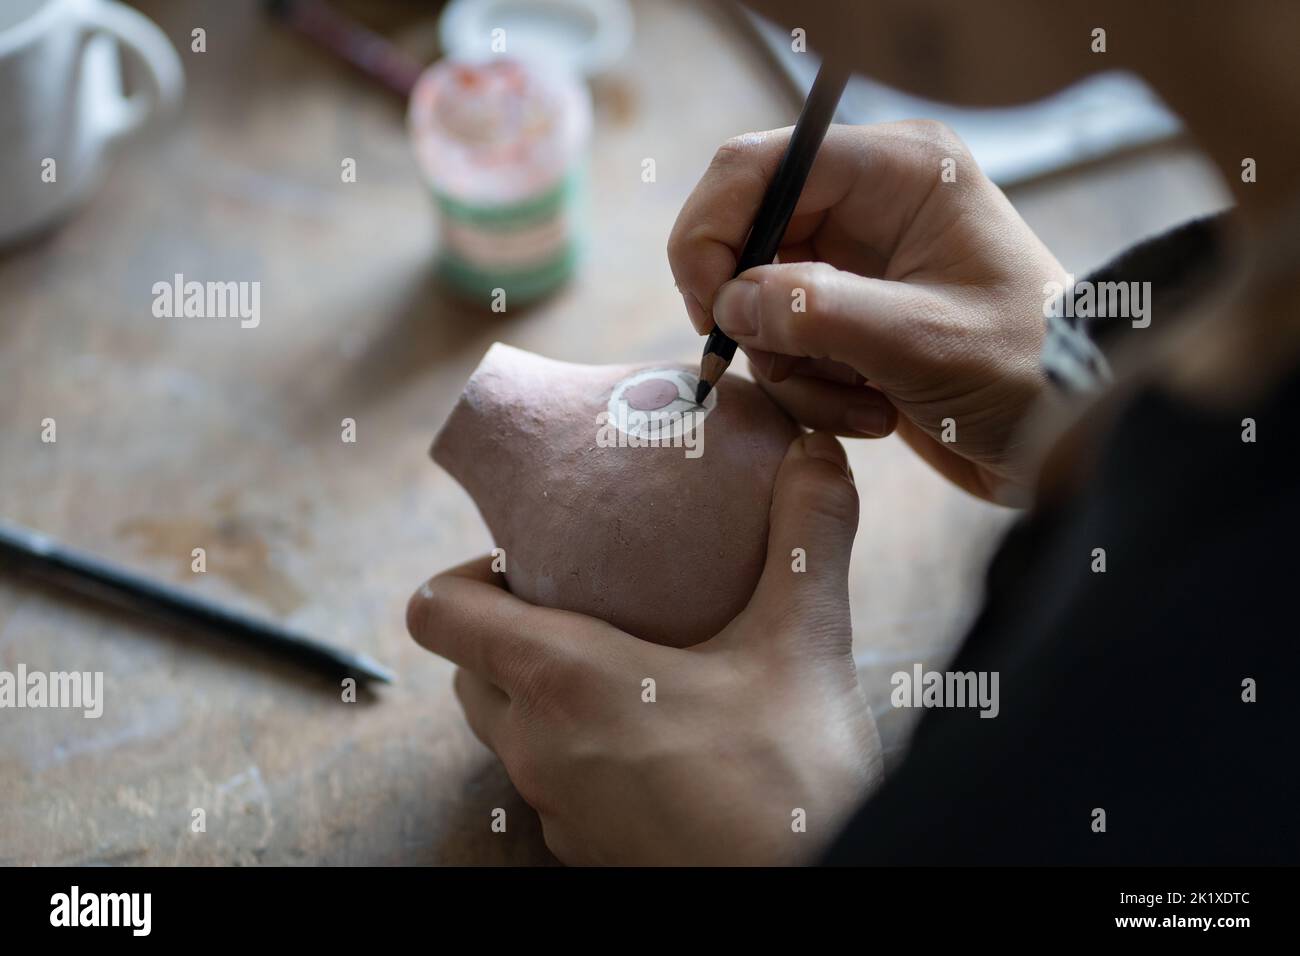 Craftsmaster hace interesante dibujo de boceto símbolo en la jarra usando lápiz para hacer el borrador Foto de stock